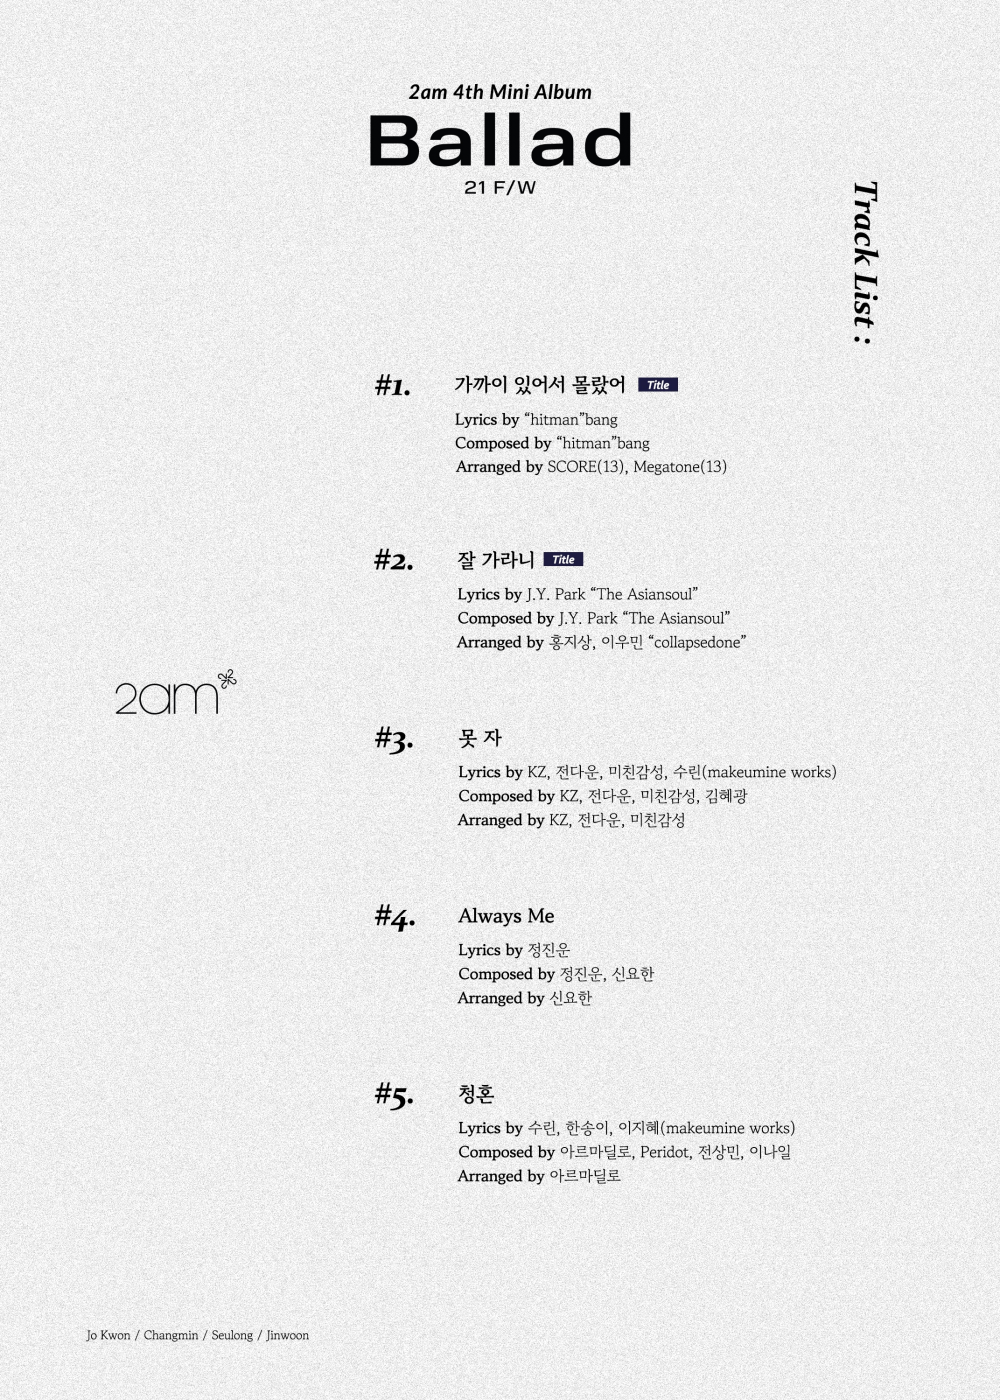 [Камбэк] 2AM альбом «21 F / W»: музыкальные клипы на песни 'No Good in Good-Bye' и 'Should've Known'